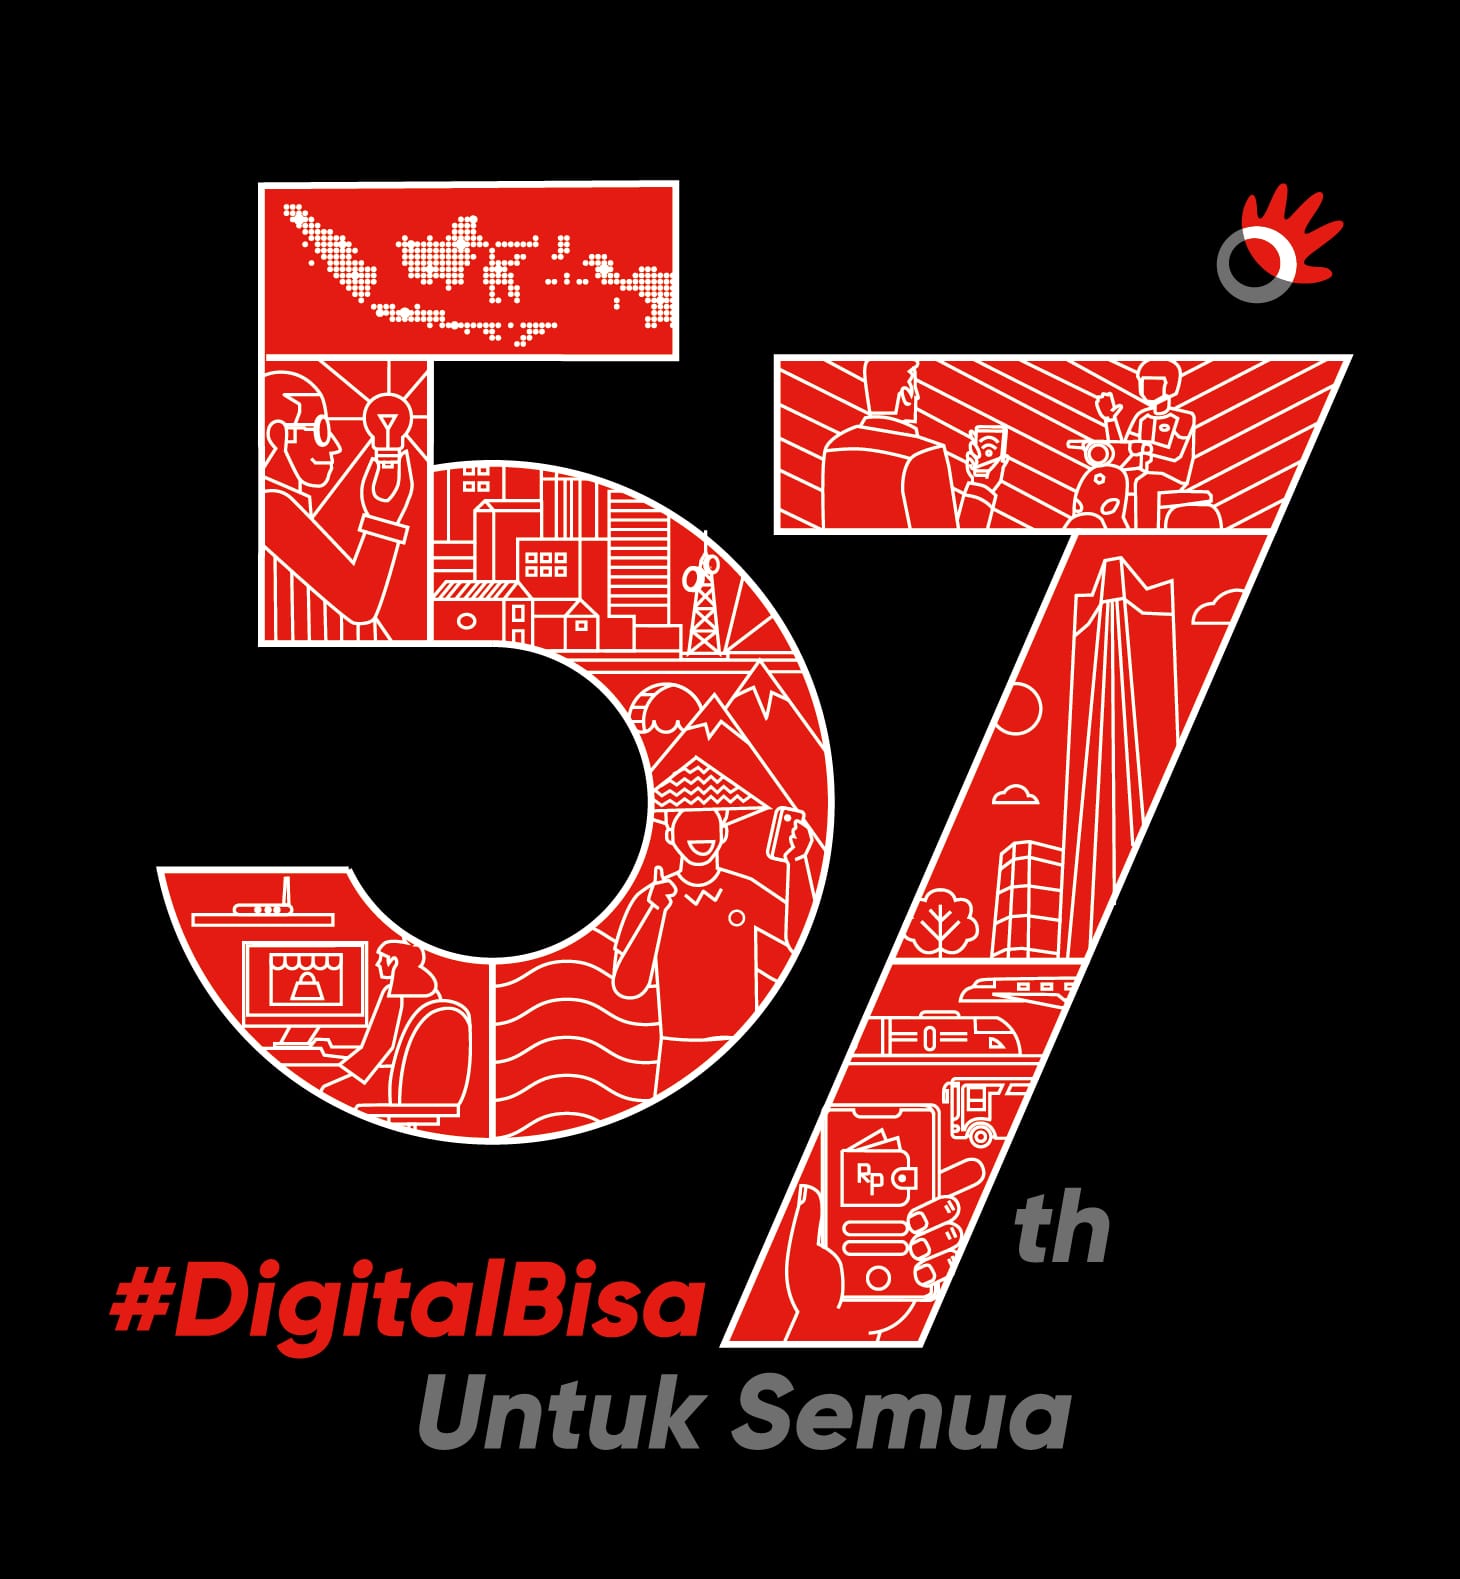 57 Tahun Telkom Indonesia, Akselerasi Terwujudnya Mimpi Anak Bangsa Melalui Digitalisasi